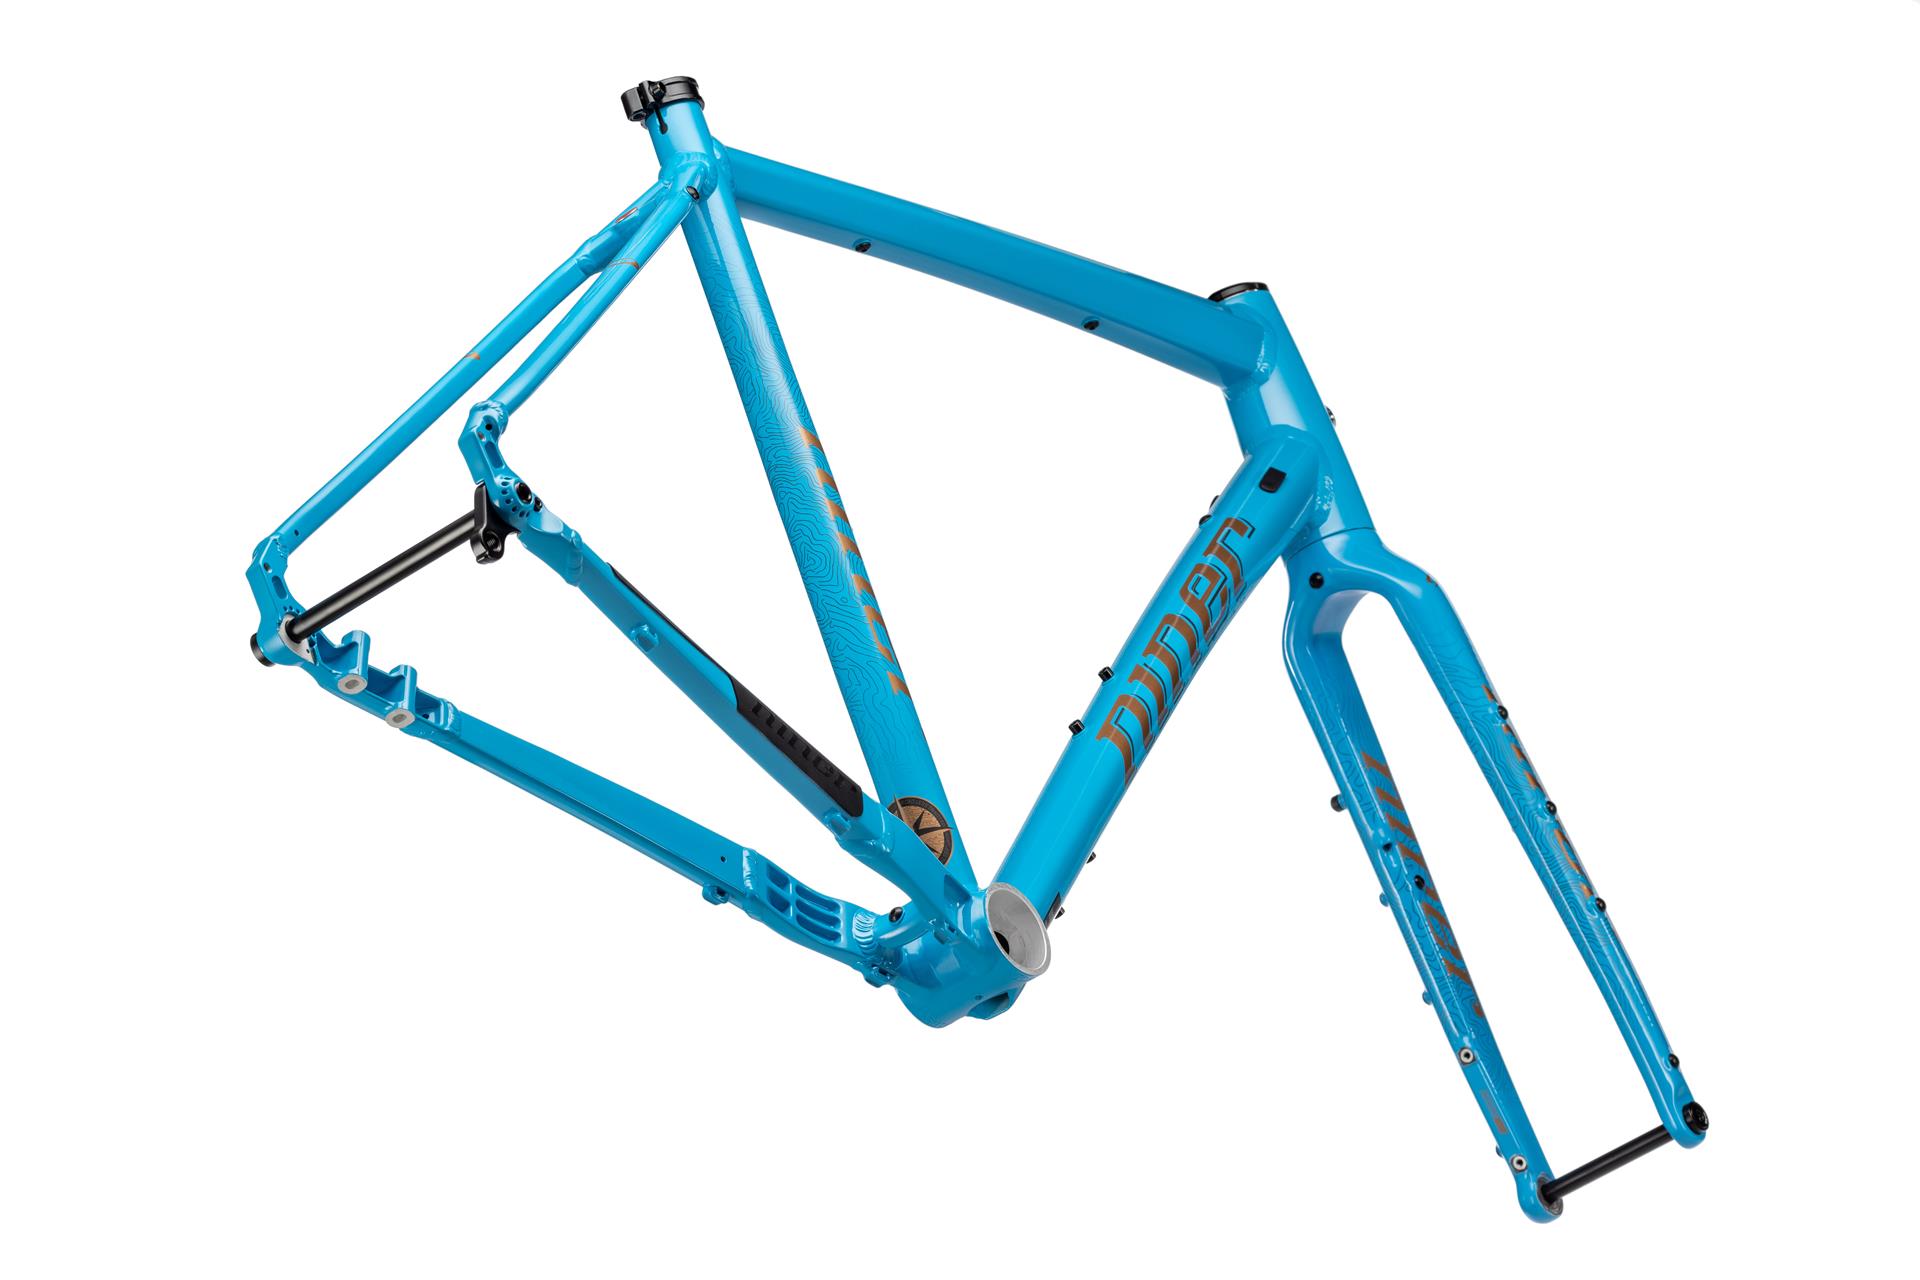 Niner RLT 2-star bike, Blue, 50